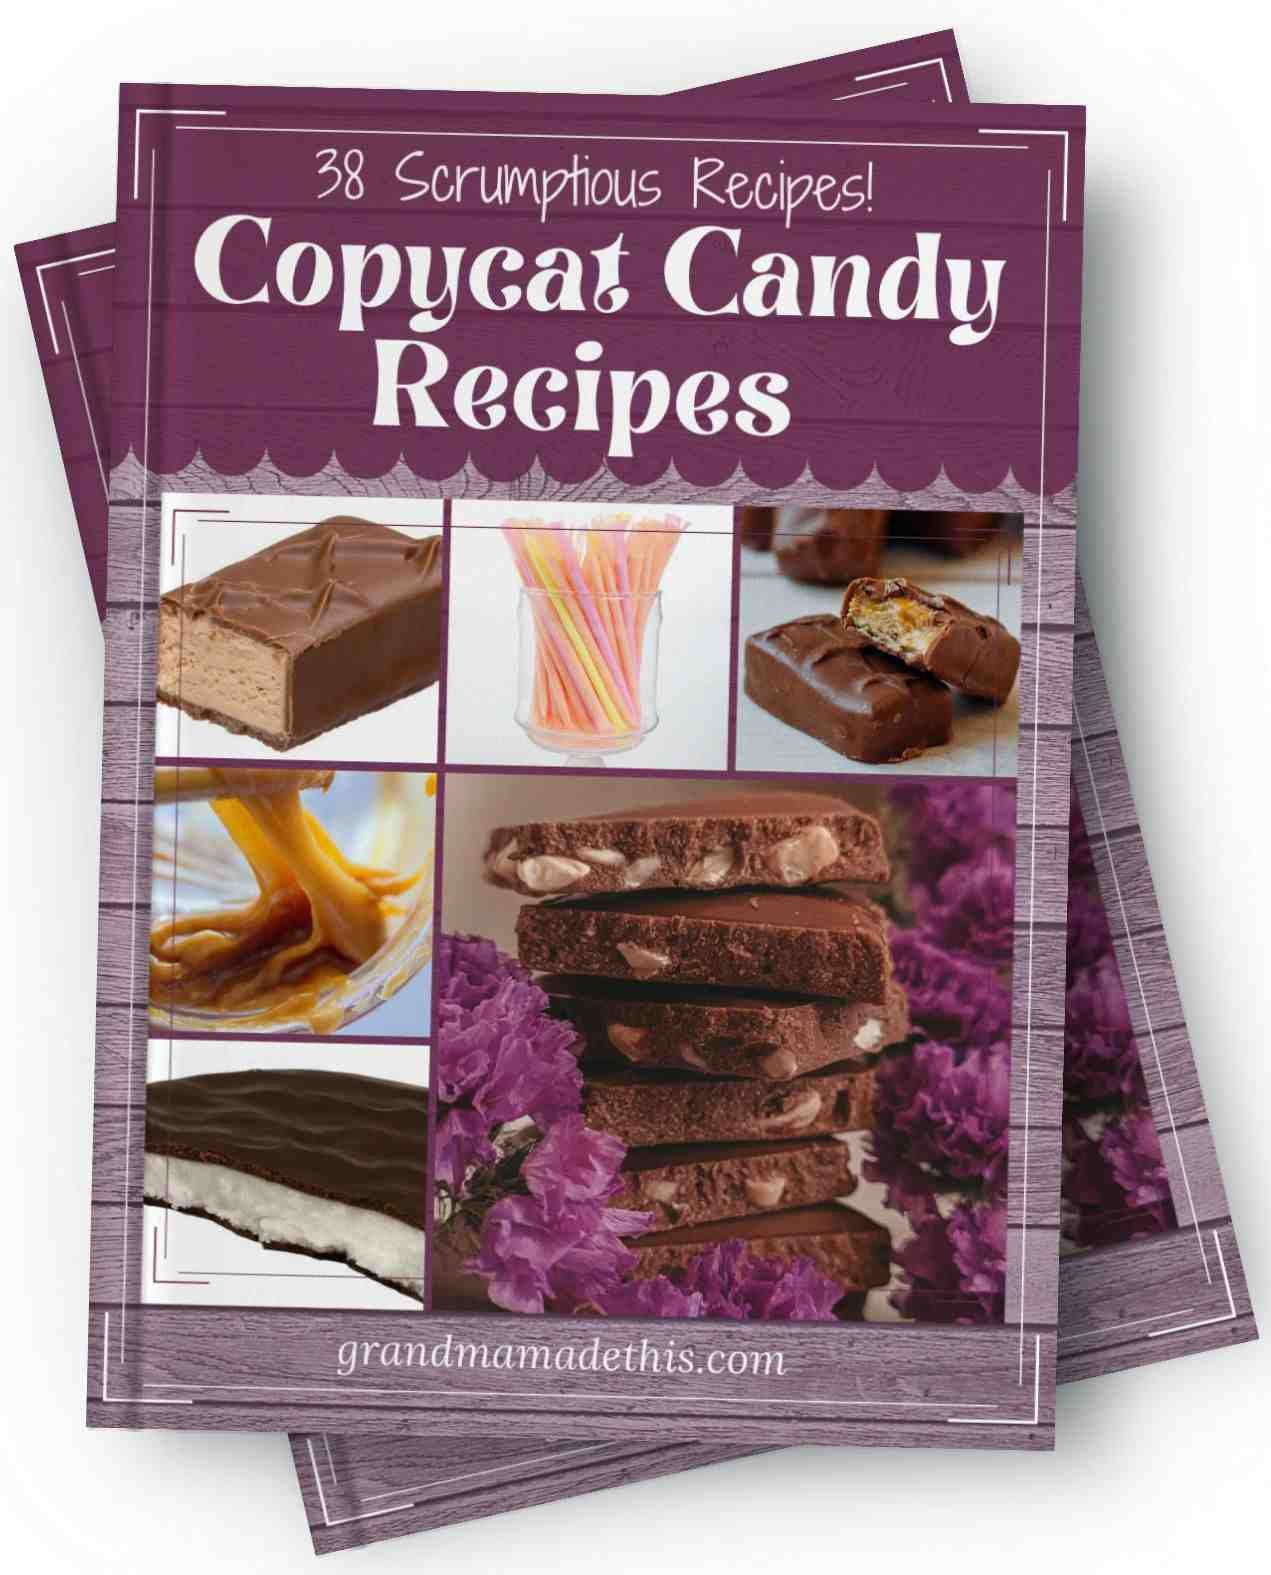 38 Scrumptious Candy Copycat Recipes eBook